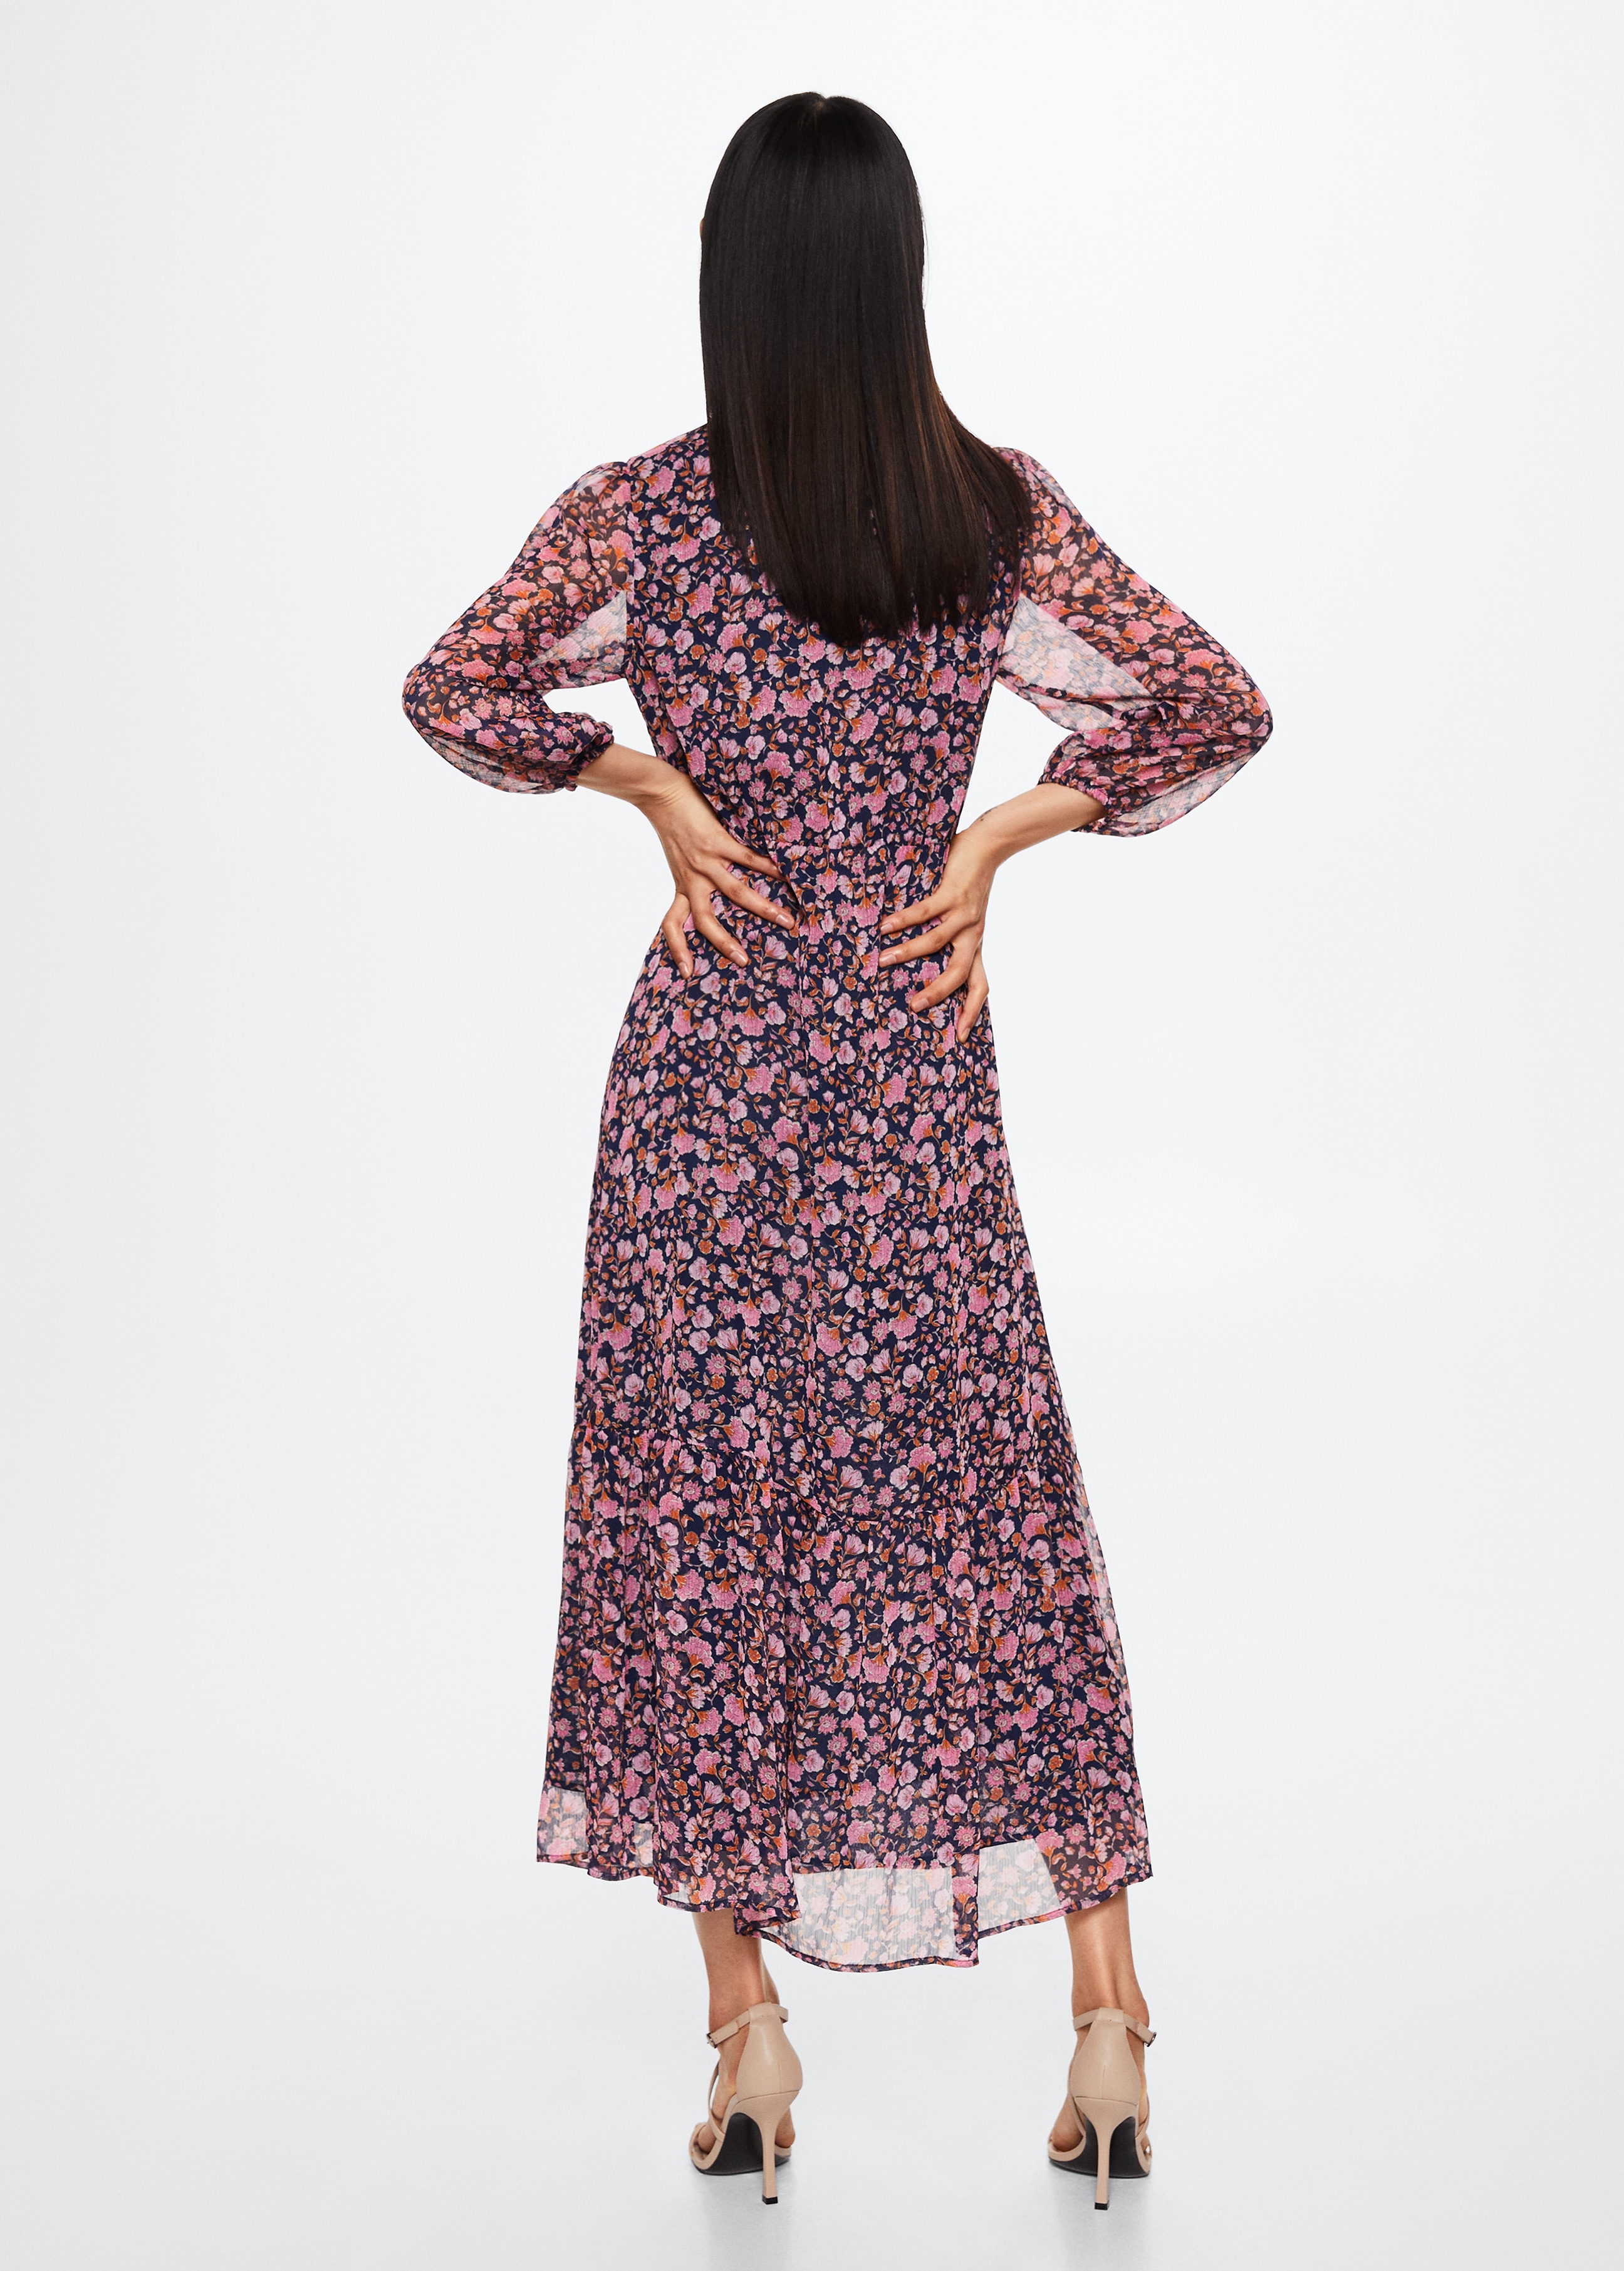 Kleid mit Blumendruck - Rückseite des Artikels